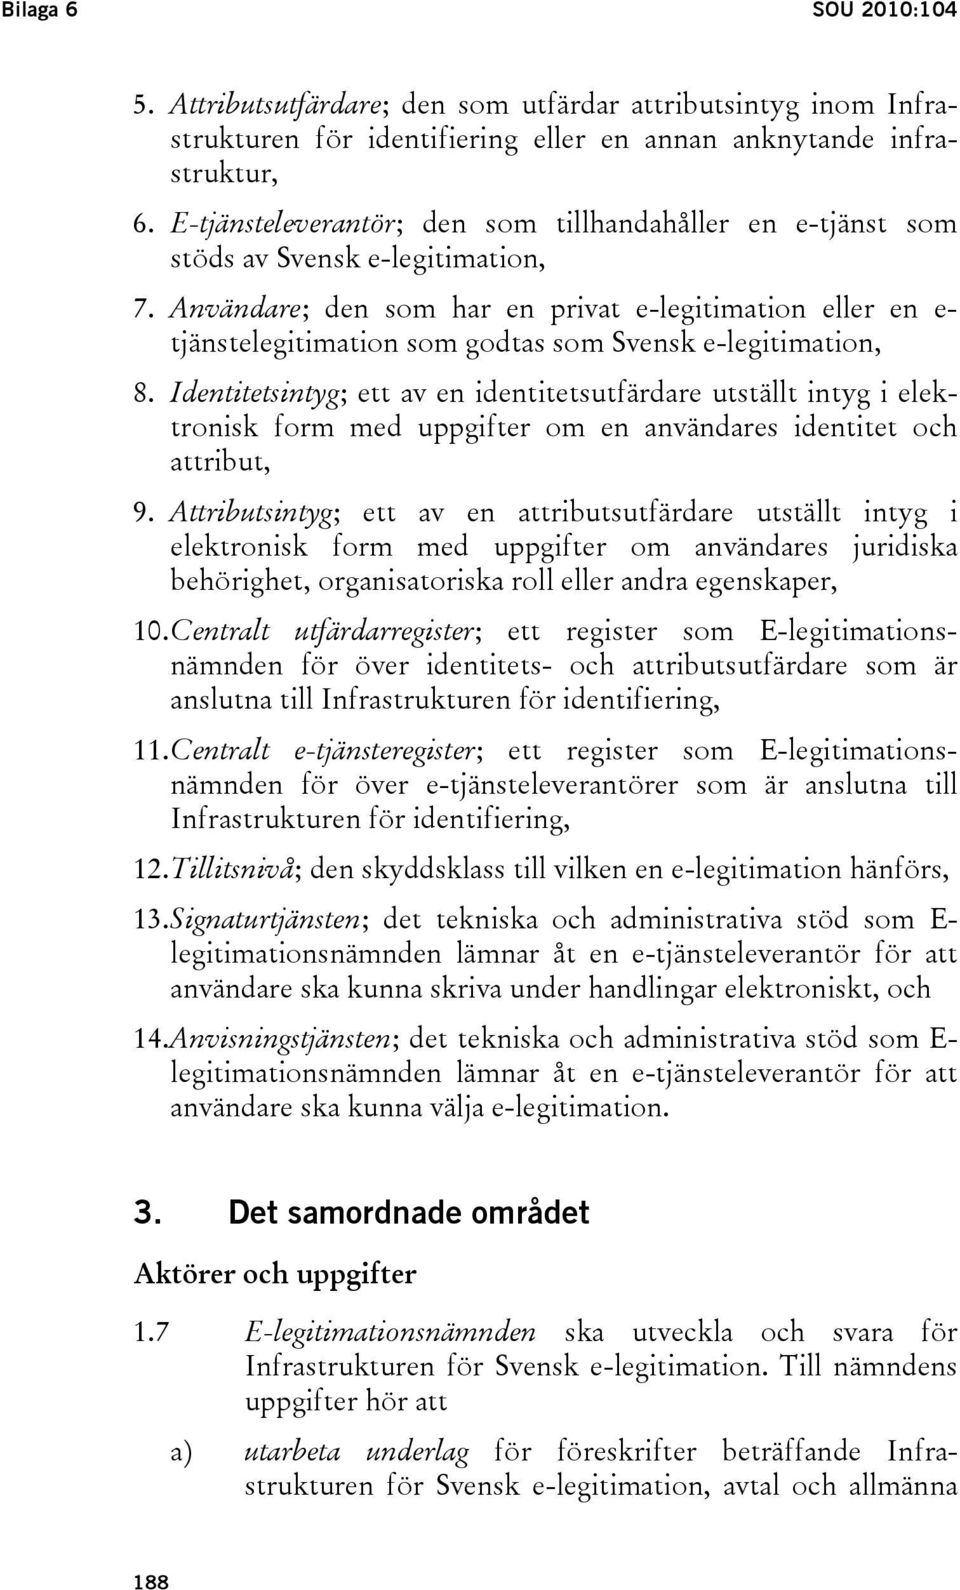 Användare; den som har en privat e-legitimation eller en e- tjänstelegitimation som godtas som Svensk e-legitimation, 8.